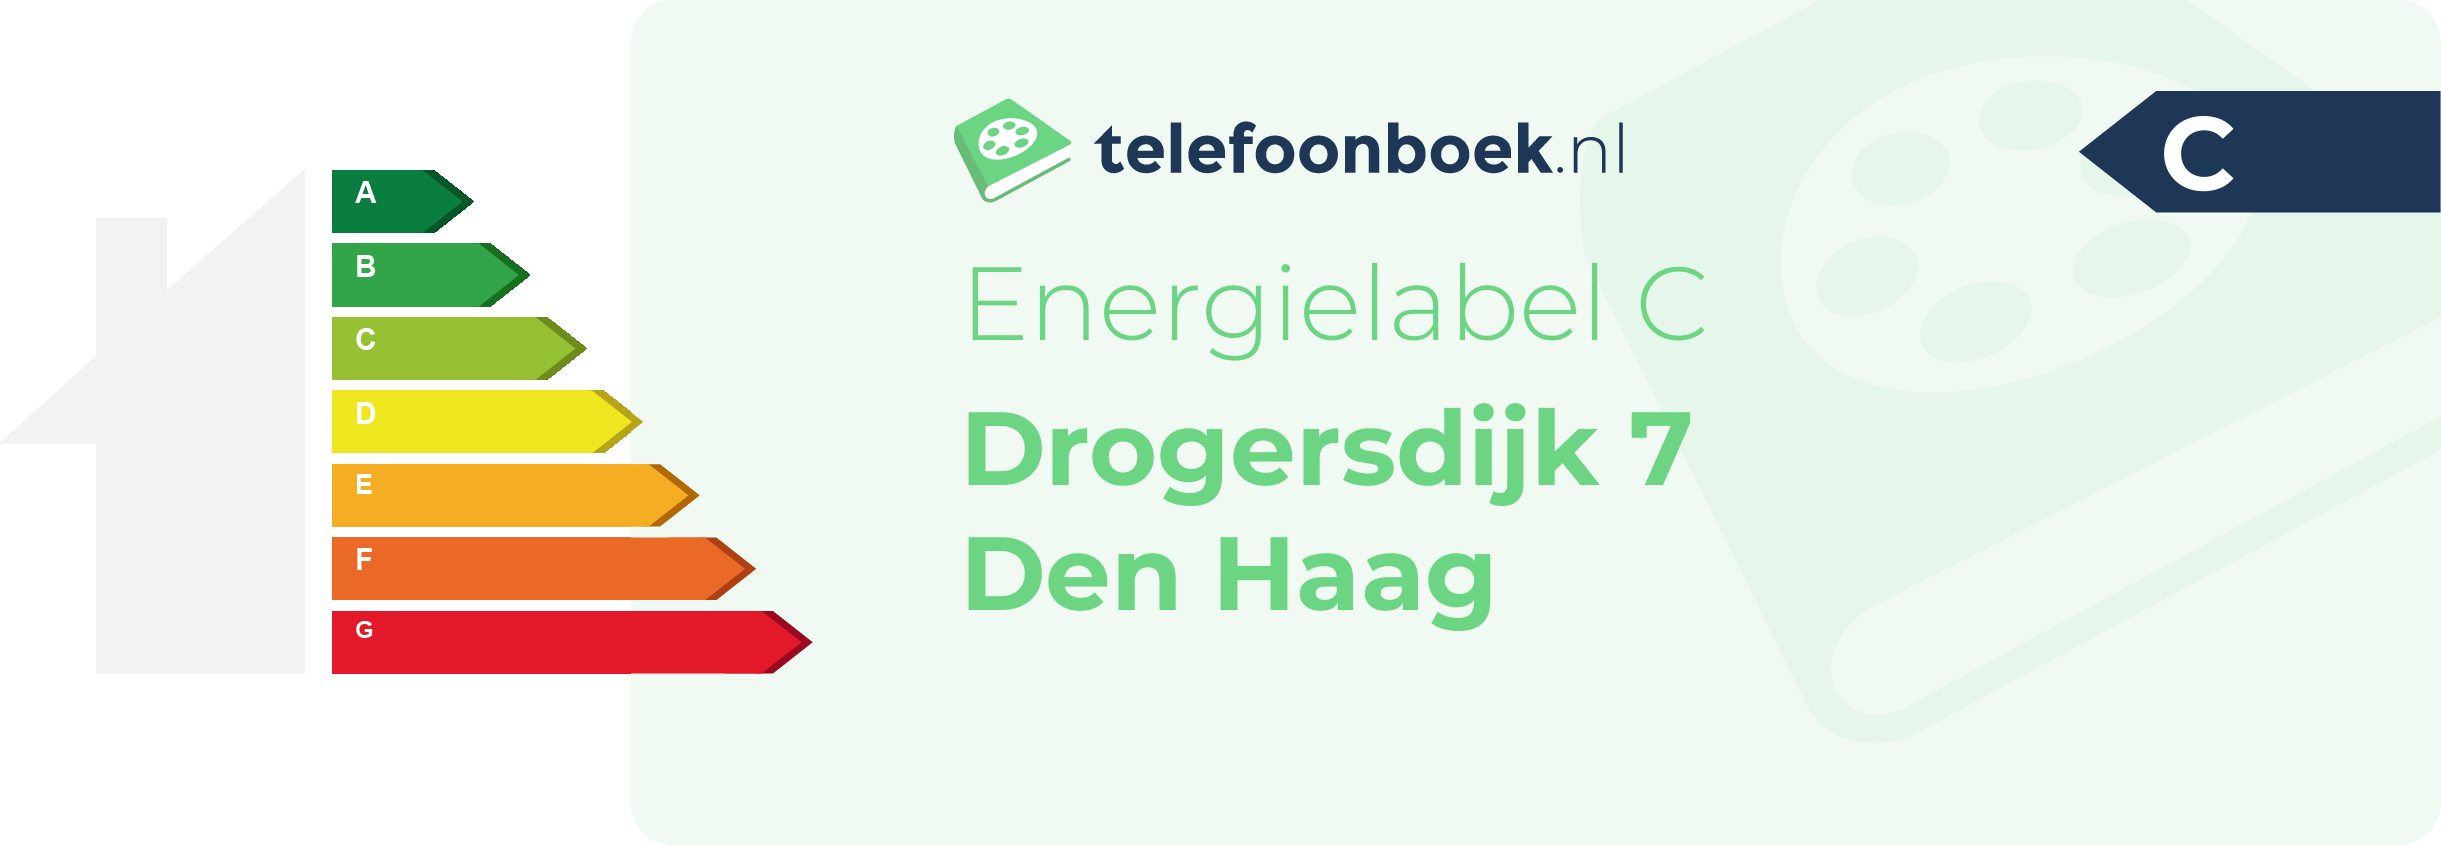 Energielabel Drogersdijk 7 Den Haag